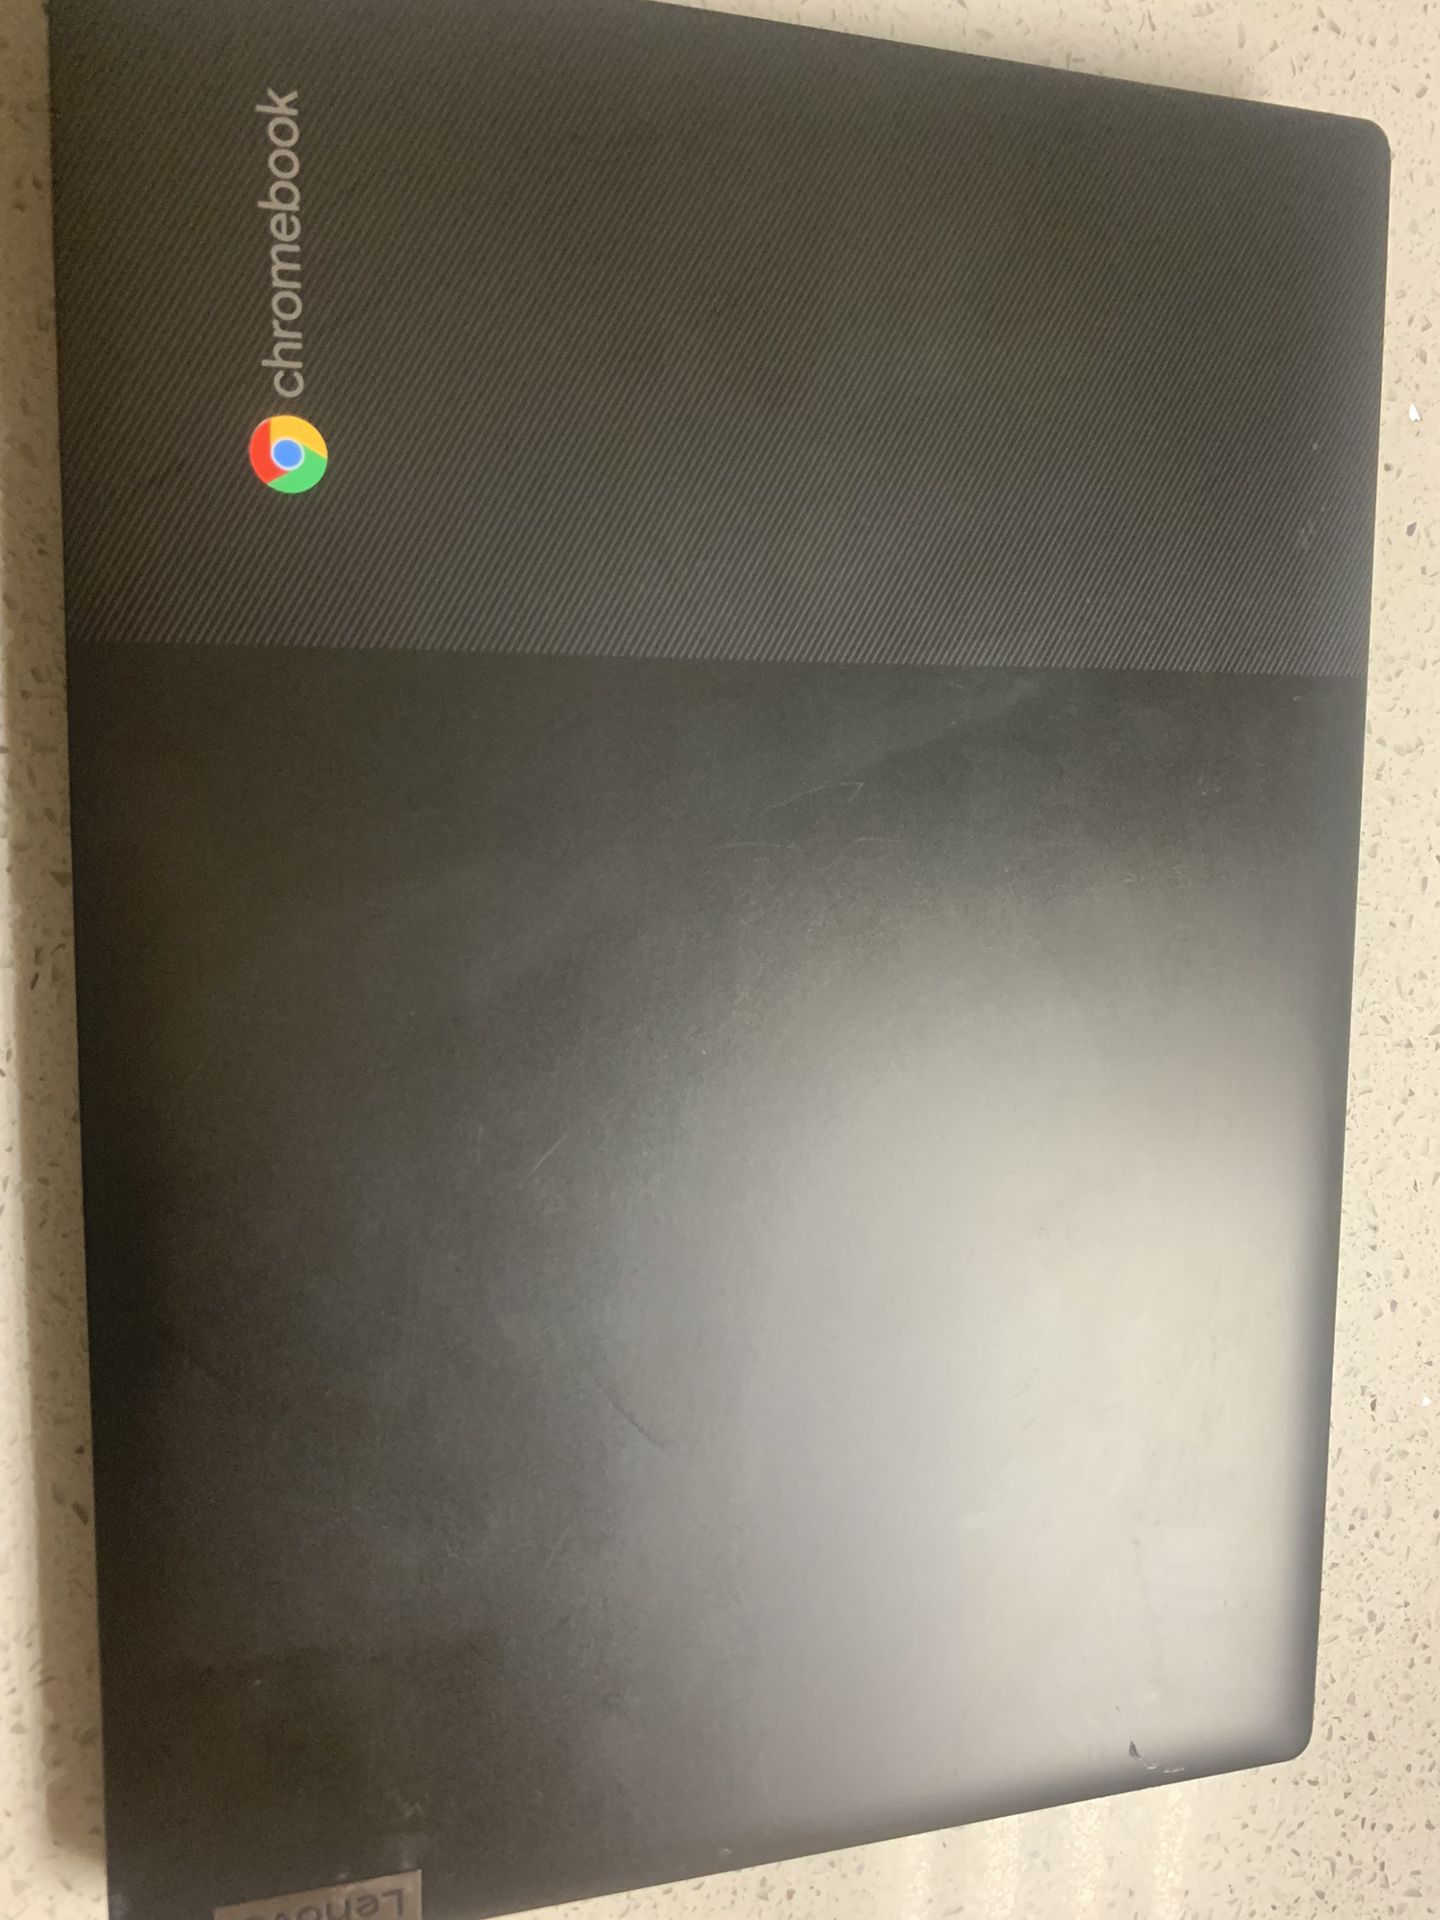 Chromebook Like New